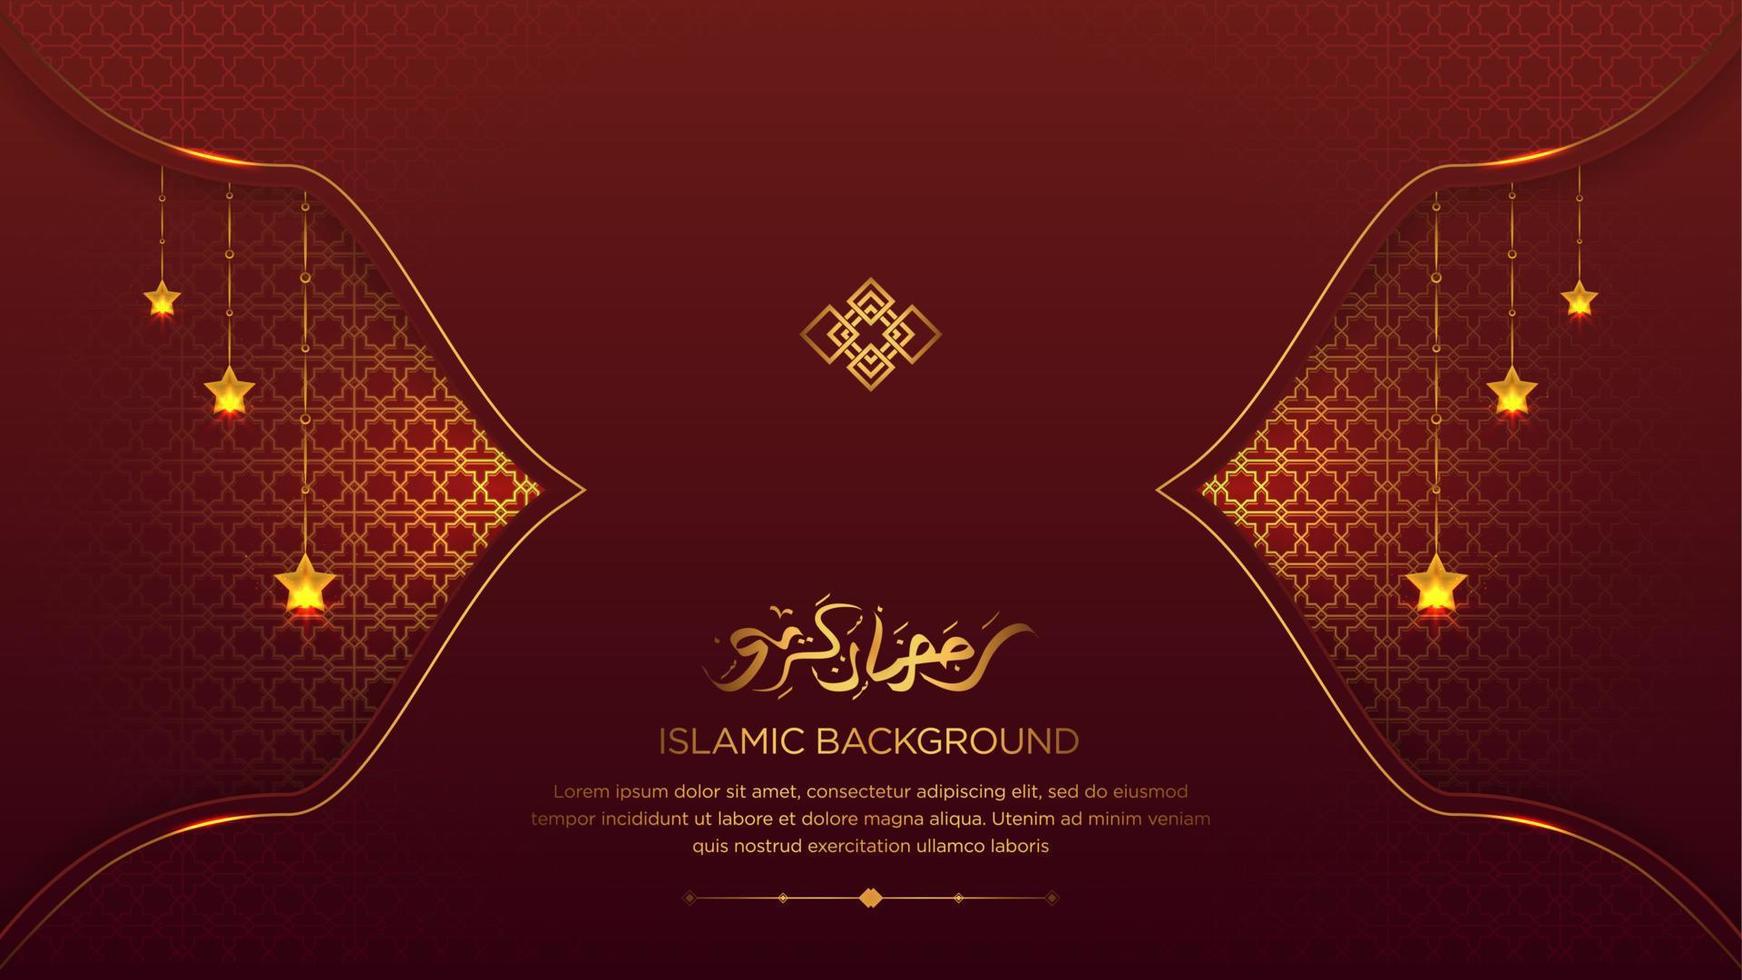 árabe ramadan kareem elegante luxo vermelho e dourado fundo ornamental islâmico fronteira islâmica e ornamento decorativo de estrelas penduradas com caligrafia árabe vetor